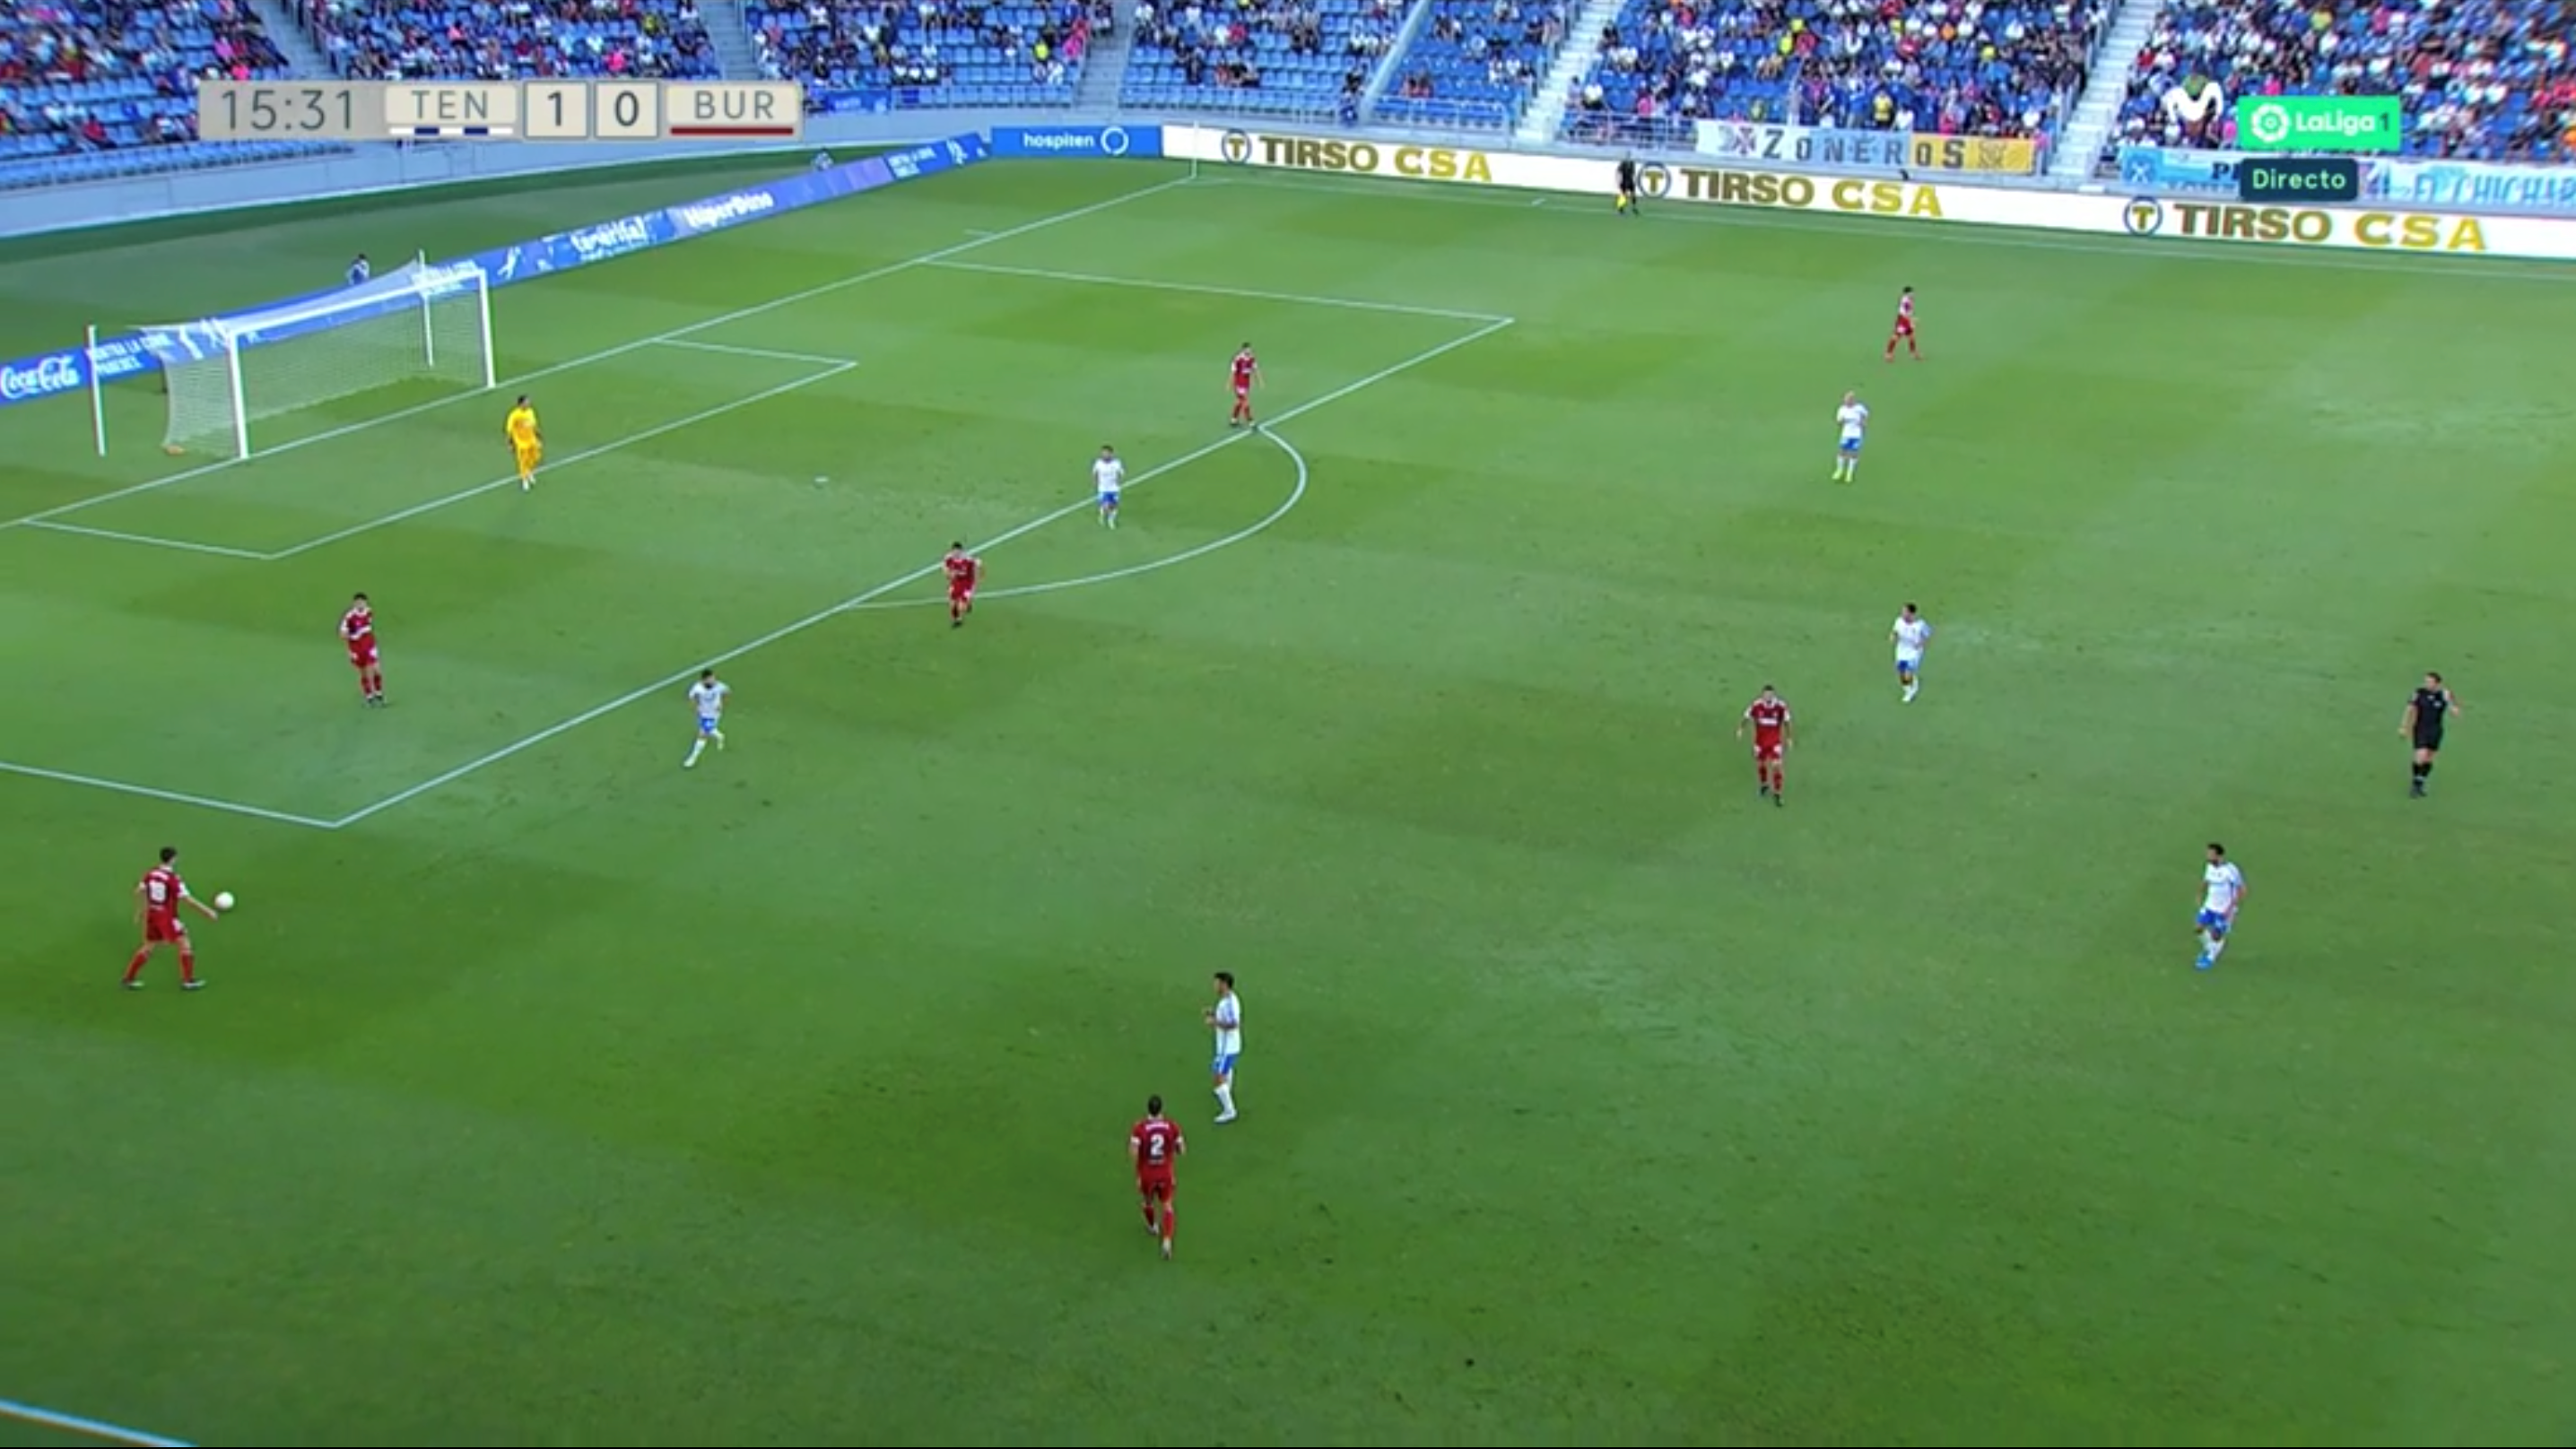 Análisis del CD Tenerife 4-0 Burgos CF